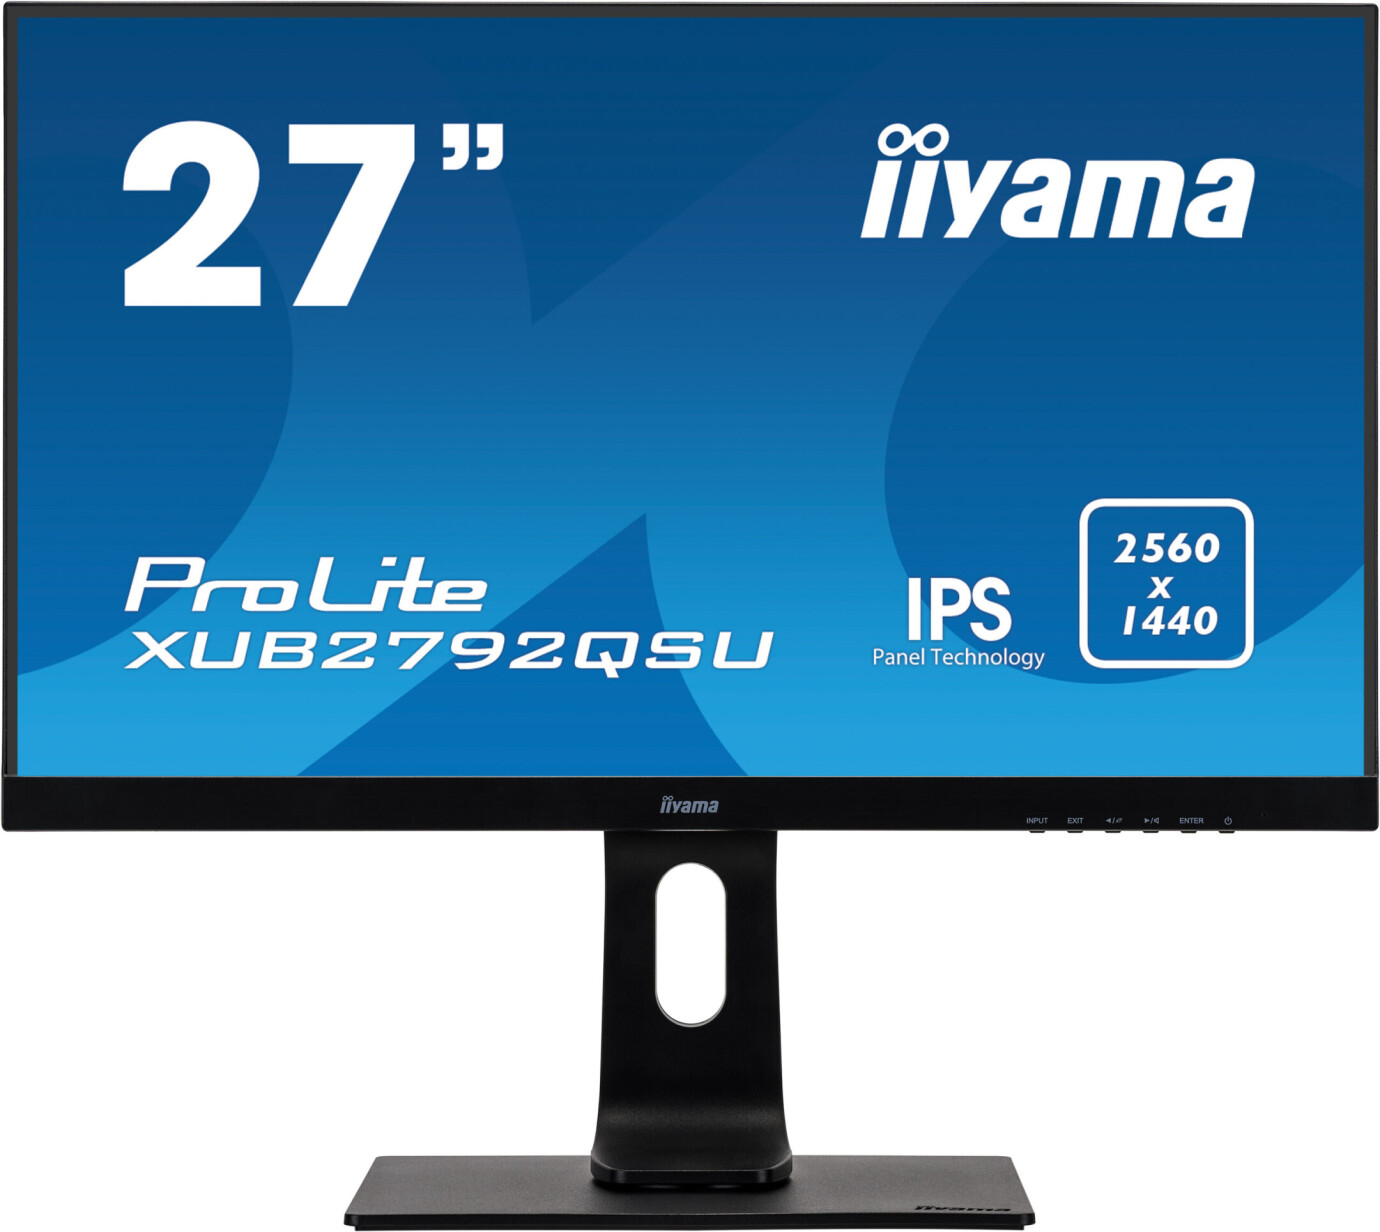 iiyama PROLITE XUB2792QSU-B1 27'' Businessmonitor mit QHD Auflösung